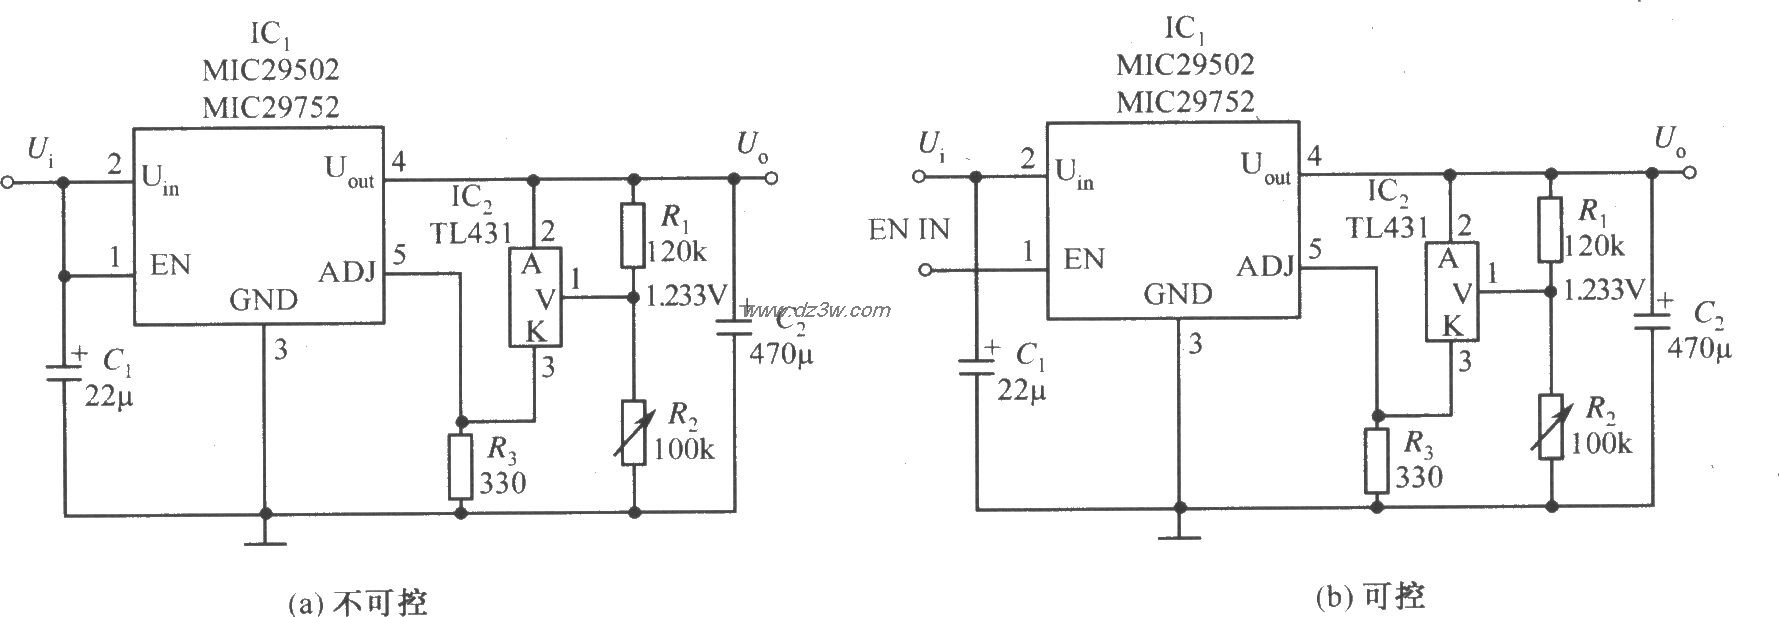 MIC29502／MIC29752構成的輸出精度得到改善的穩壓器電路